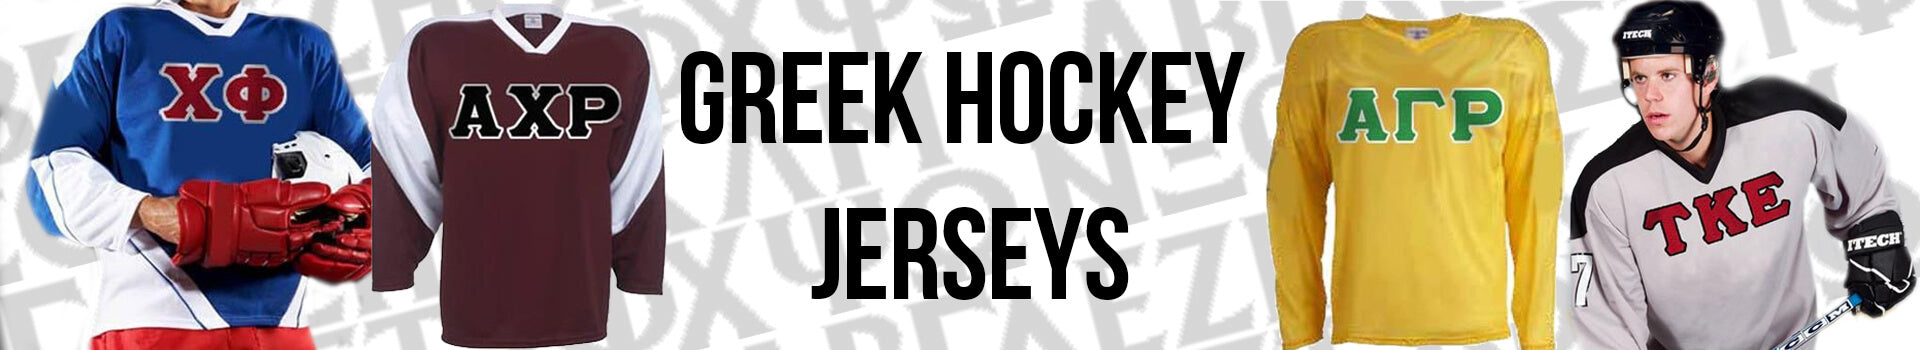 sorority hockey jersey